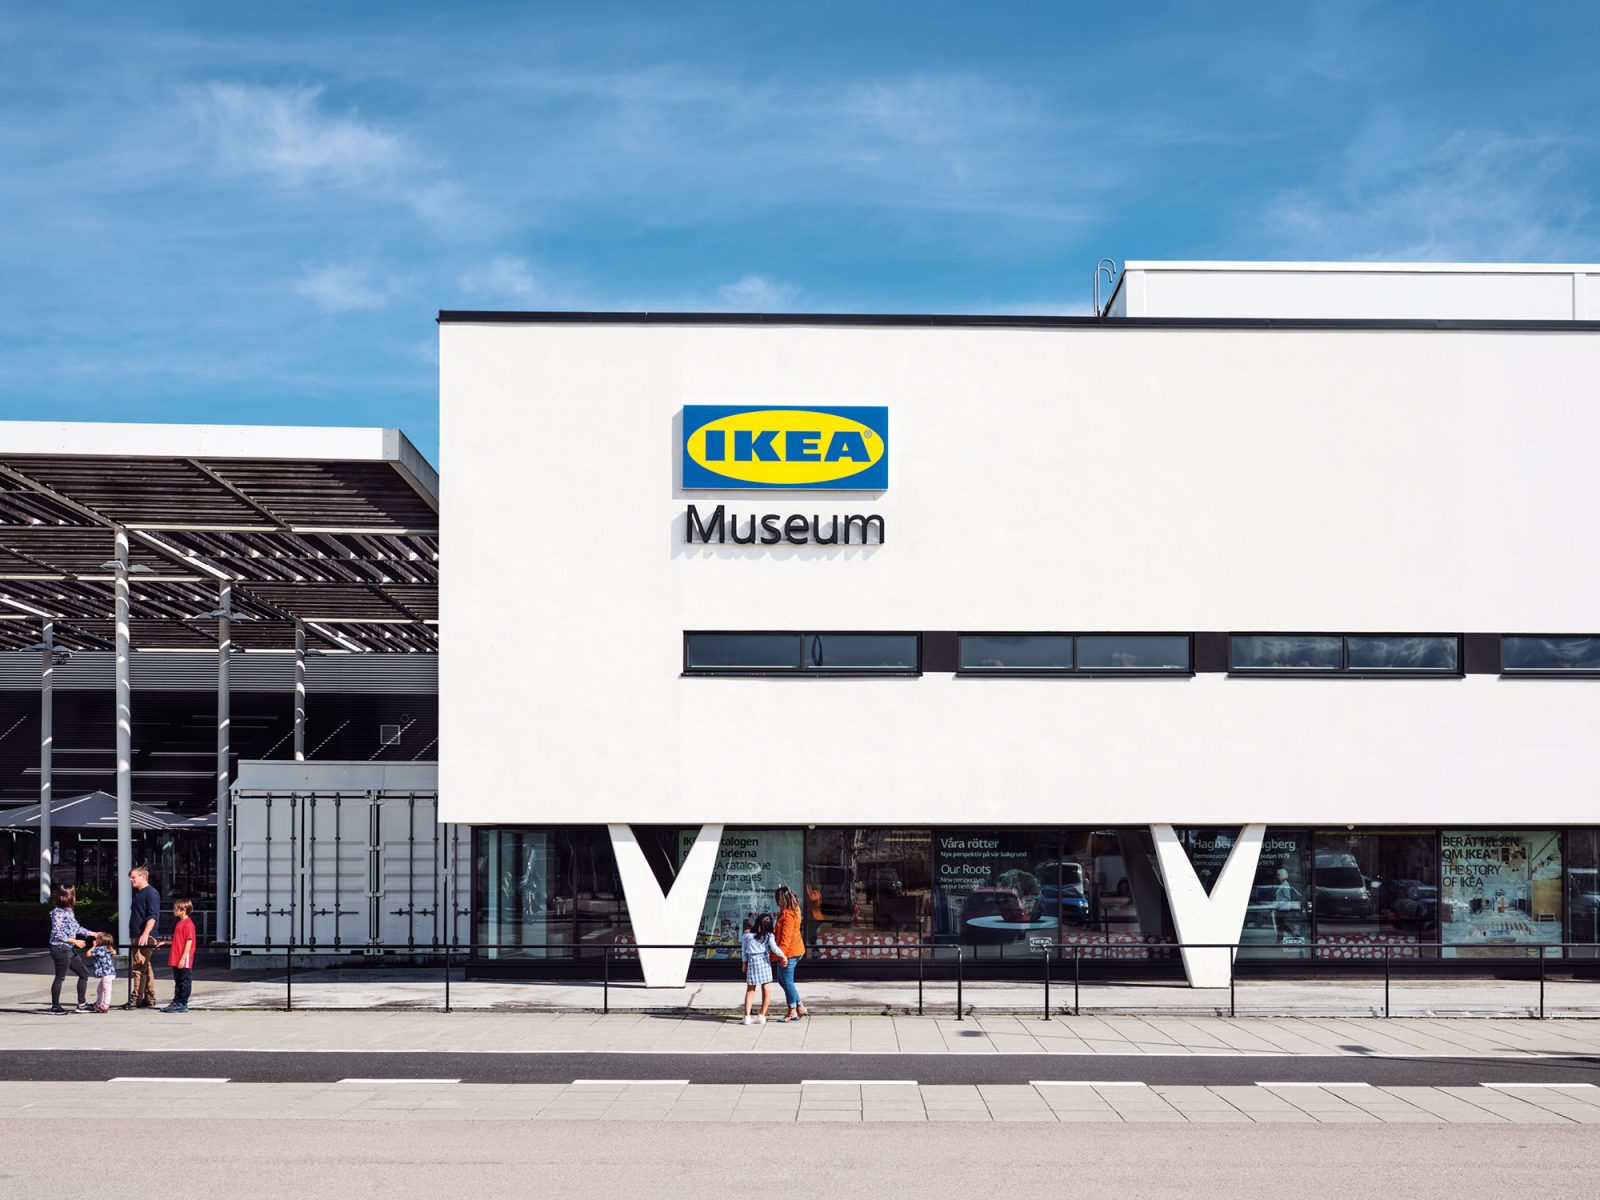 Människor står framför vit byggnad med rena linjer och v-formade pelare, på skylten på fasaden står det IKEA Museum.